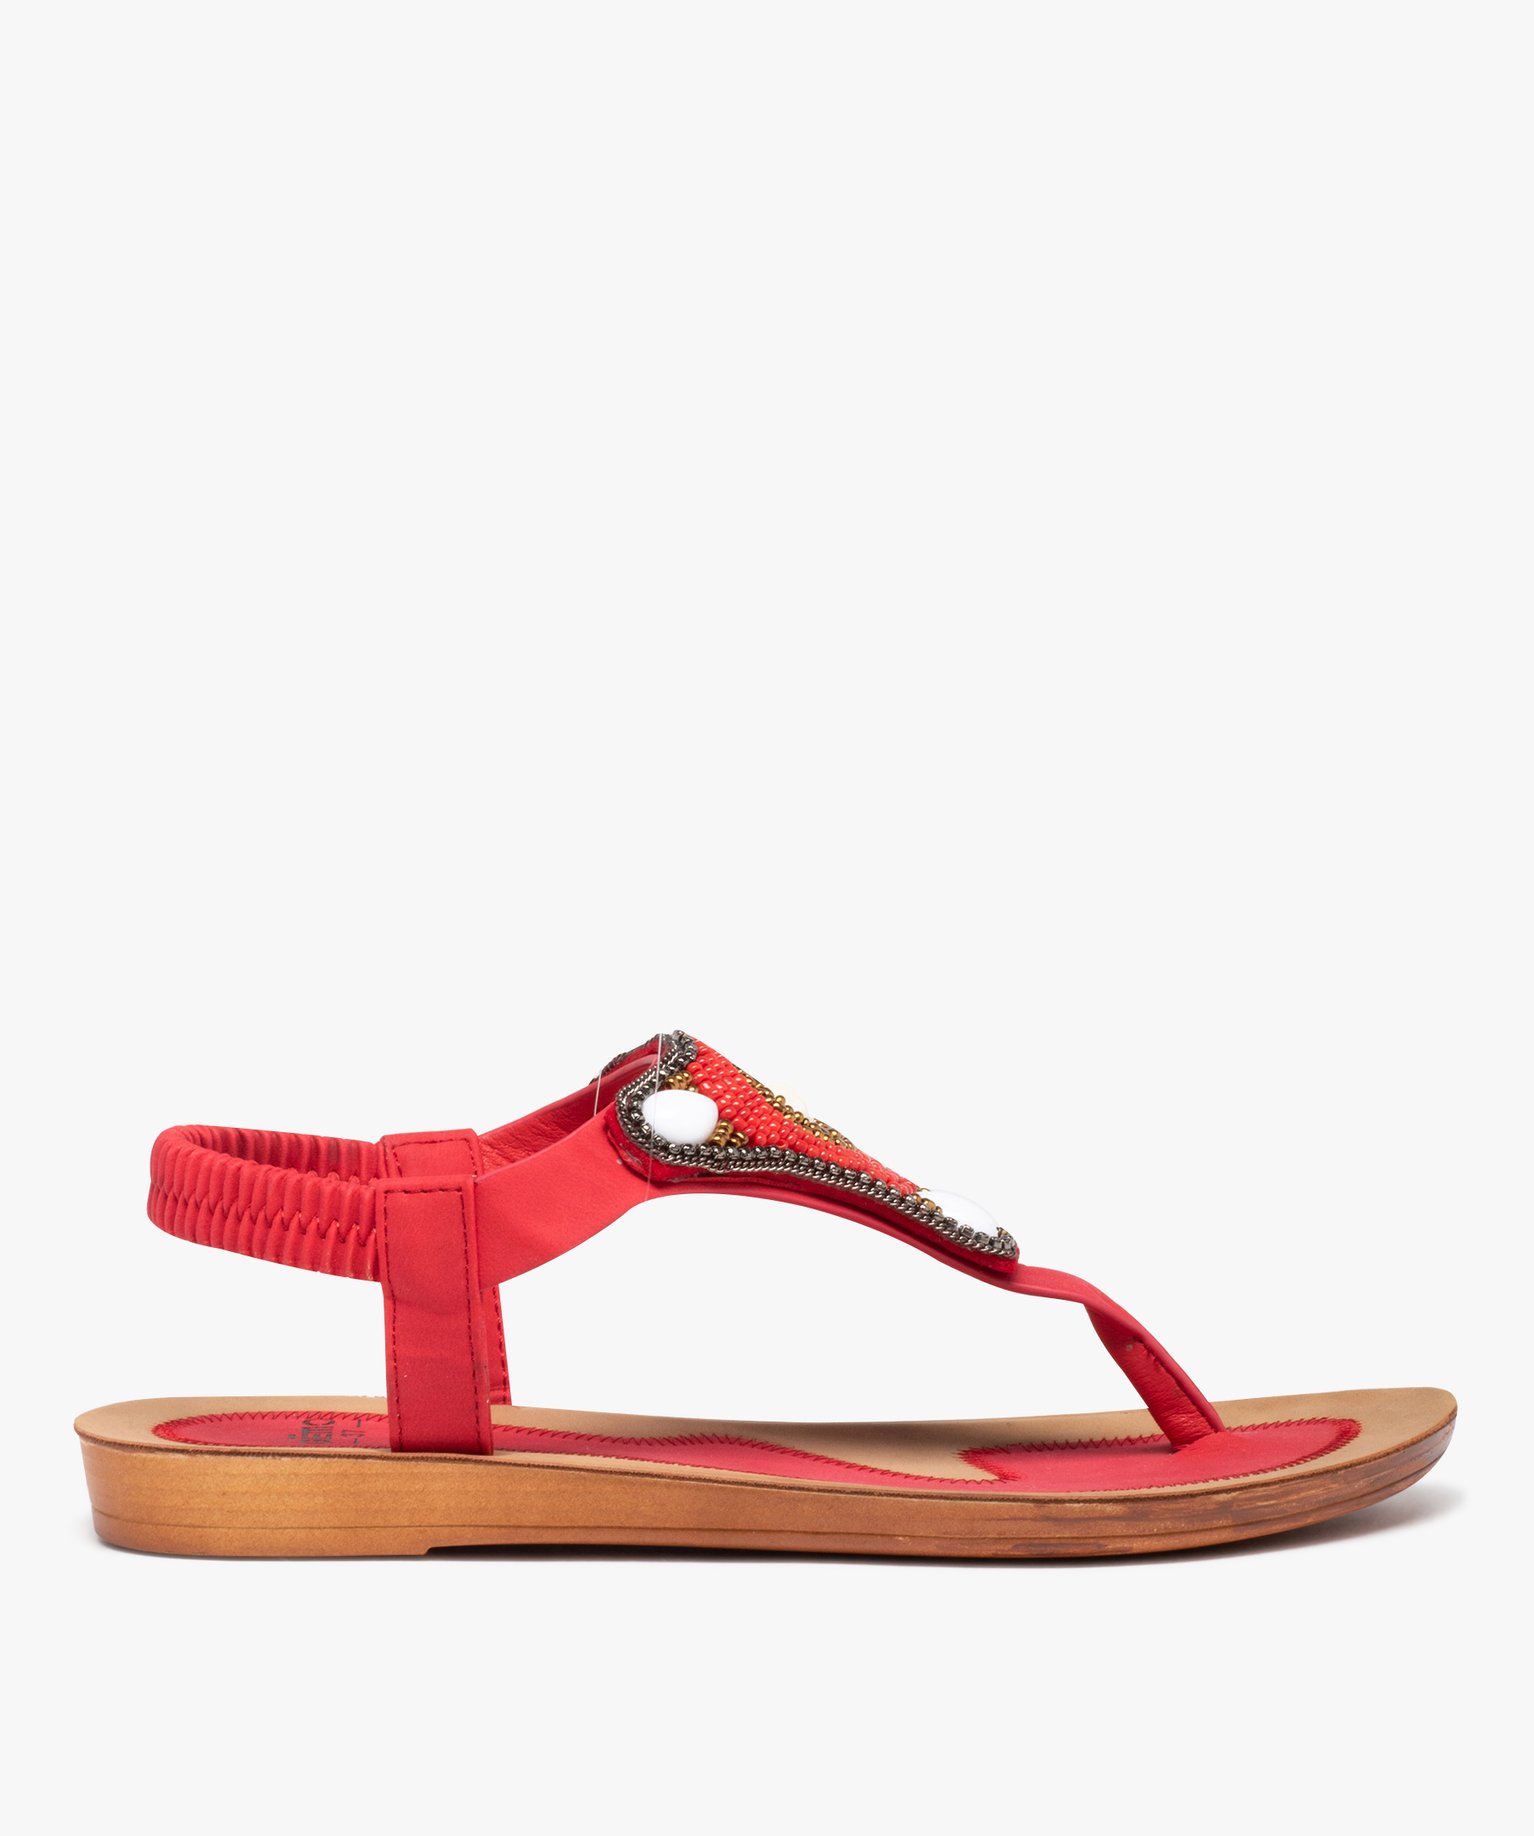 sandales femme plates a entre-doigts orne de perles rouge sandales plates et nu-pieds